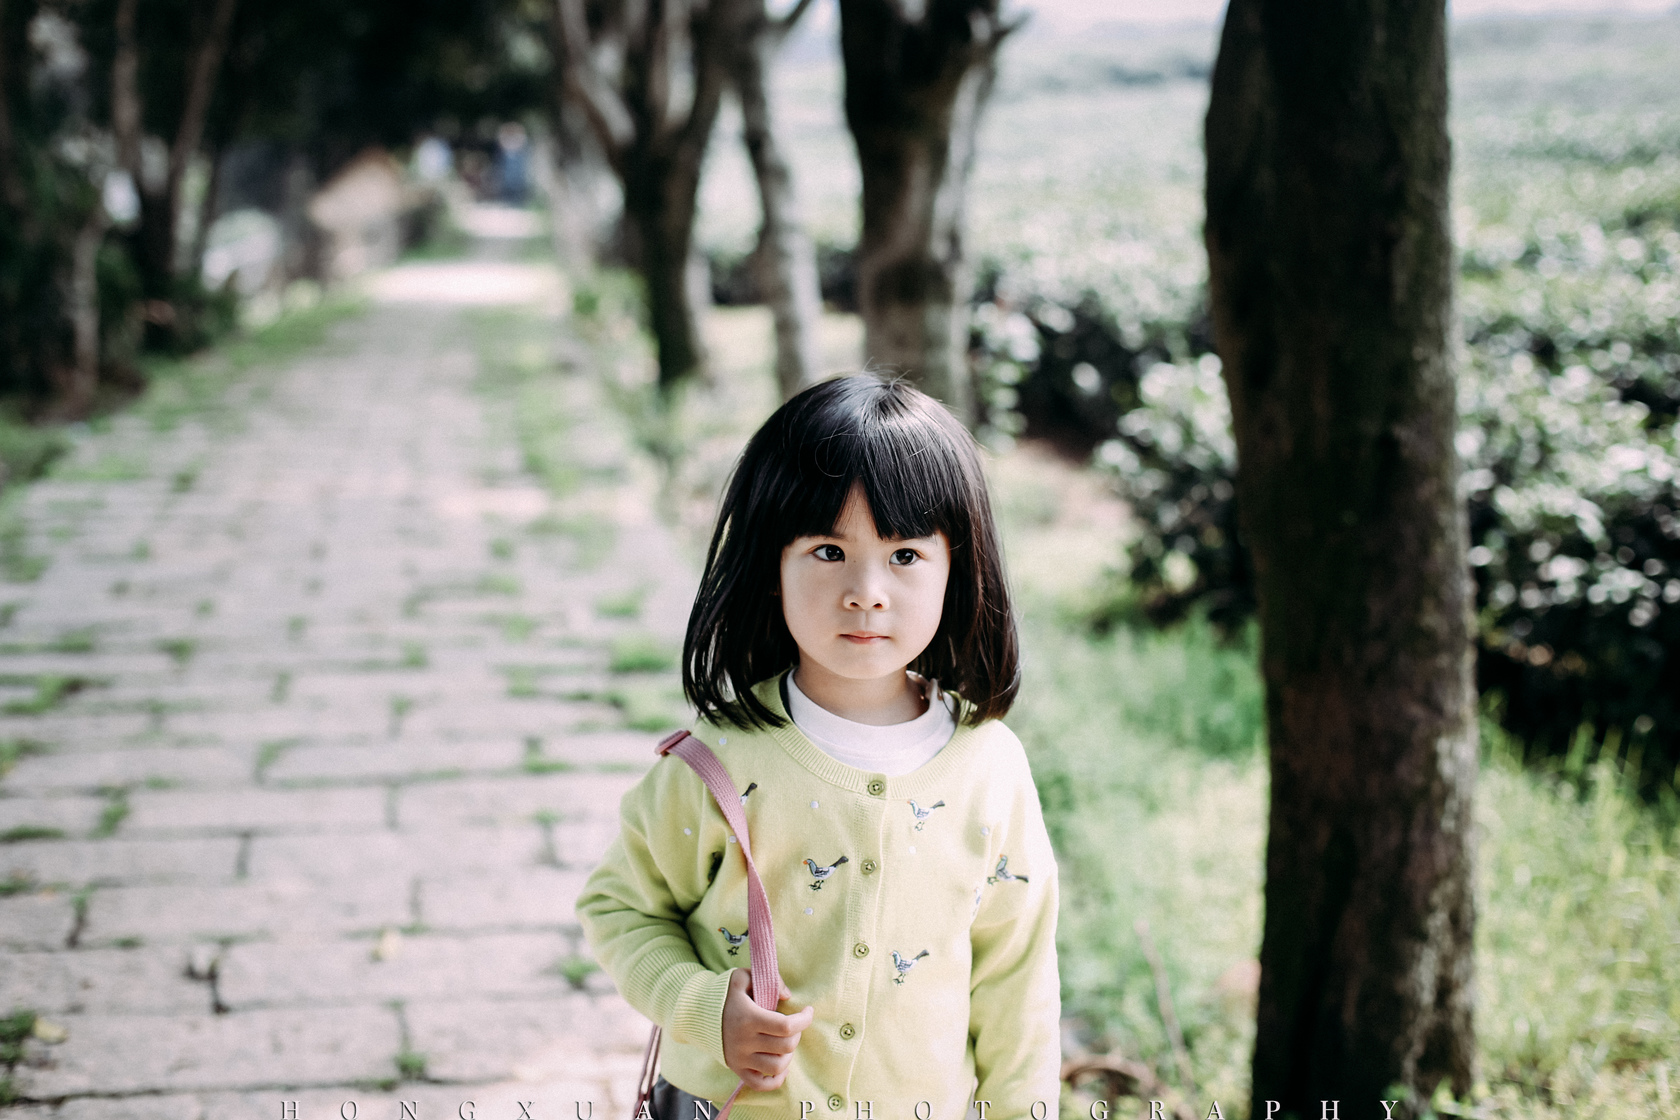 你的鹅黄色小开衫很可爱 摄影:洪小漩 出镜:阳阳 齐刘海,大眼睛,小